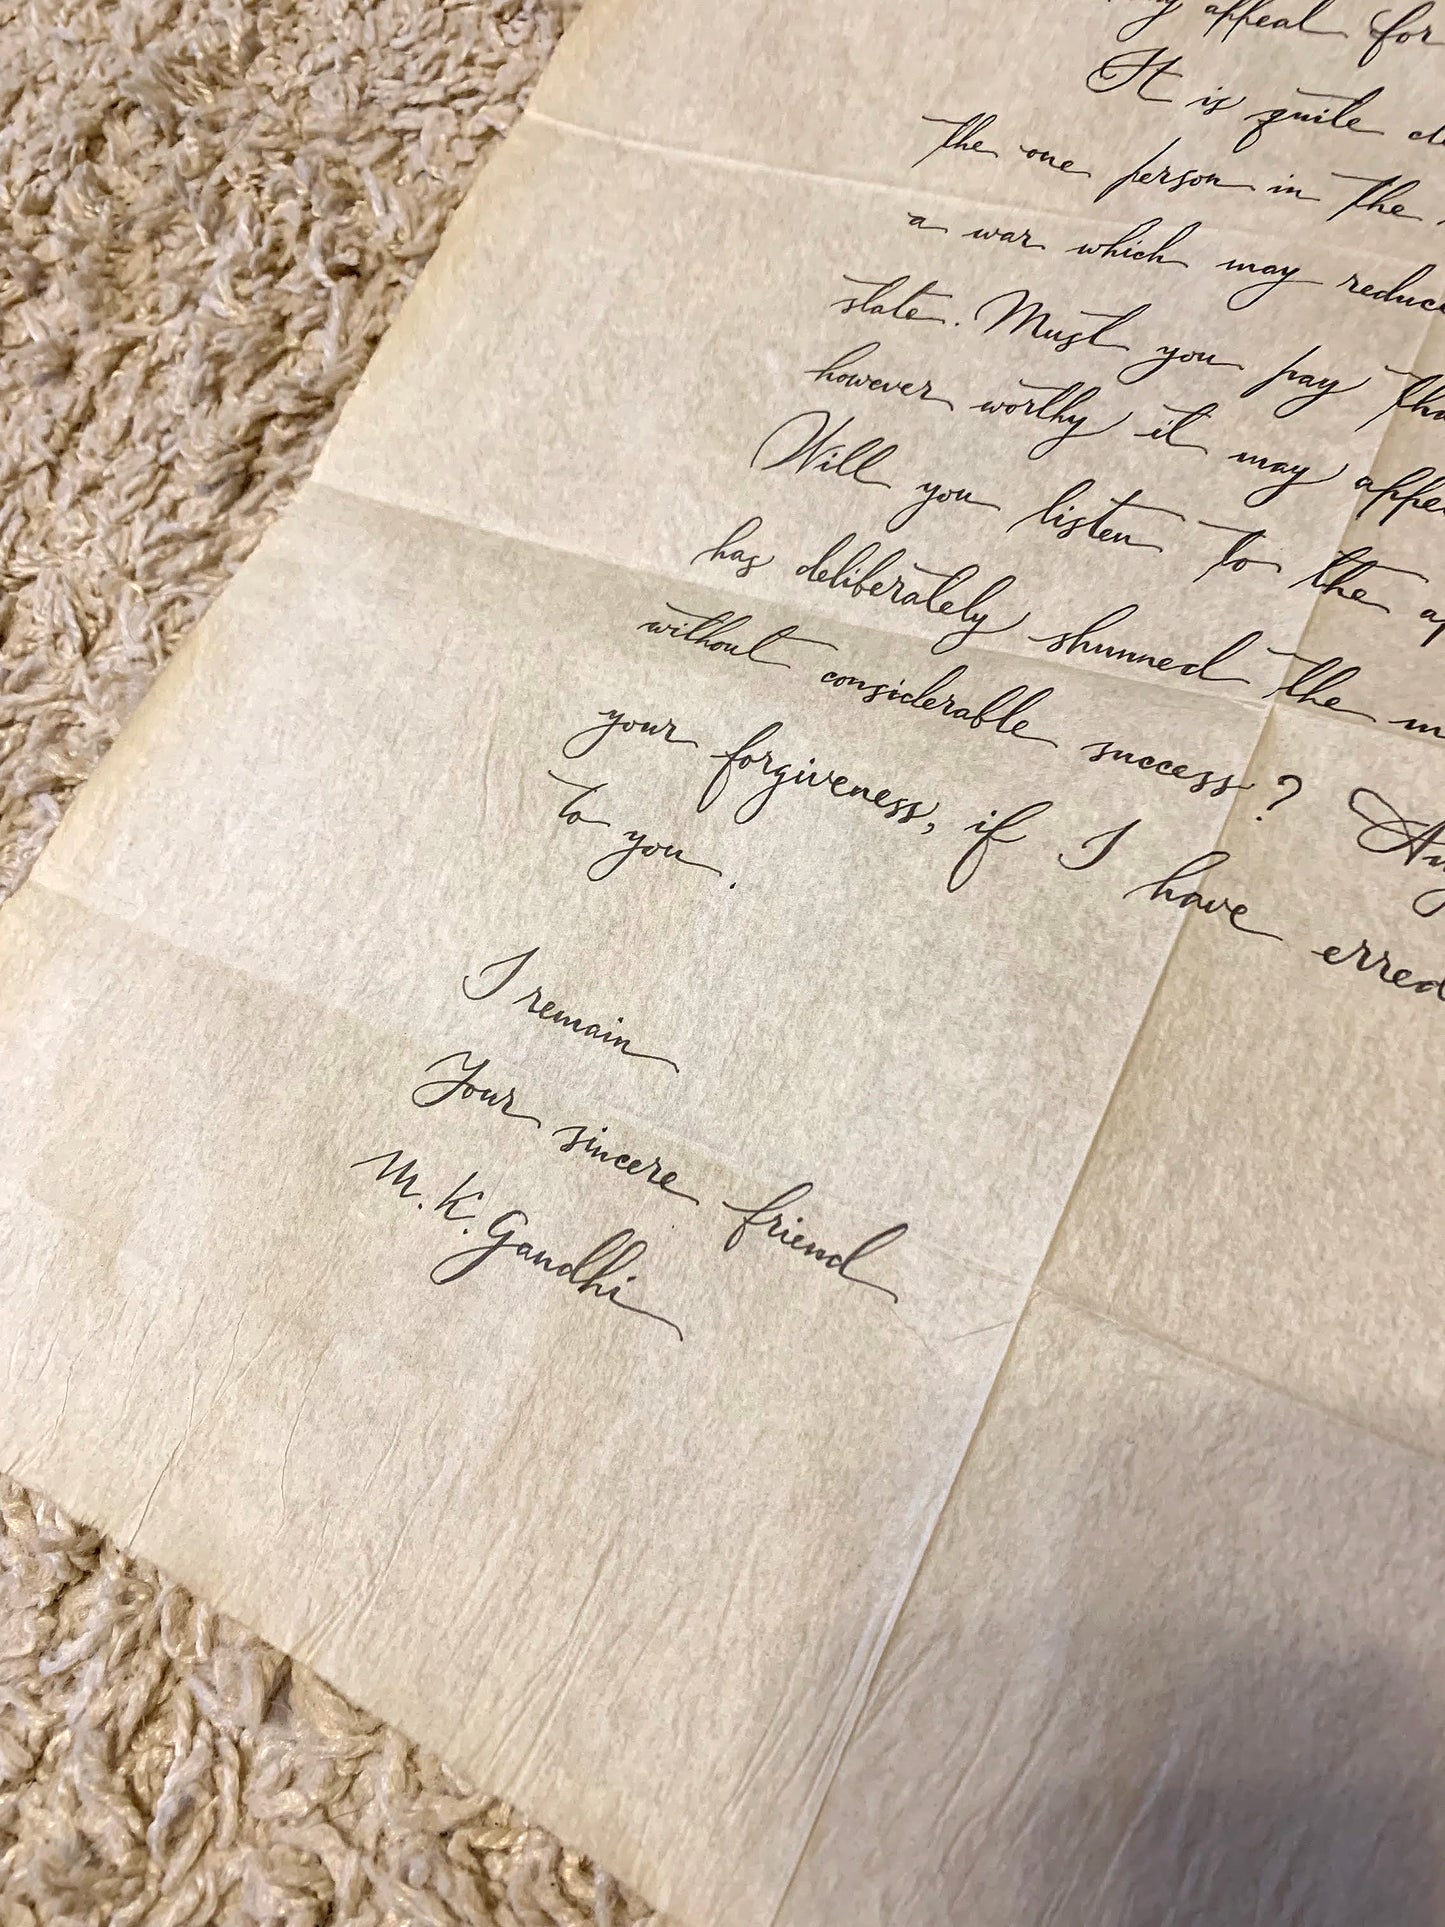 Gandhi’s Letter